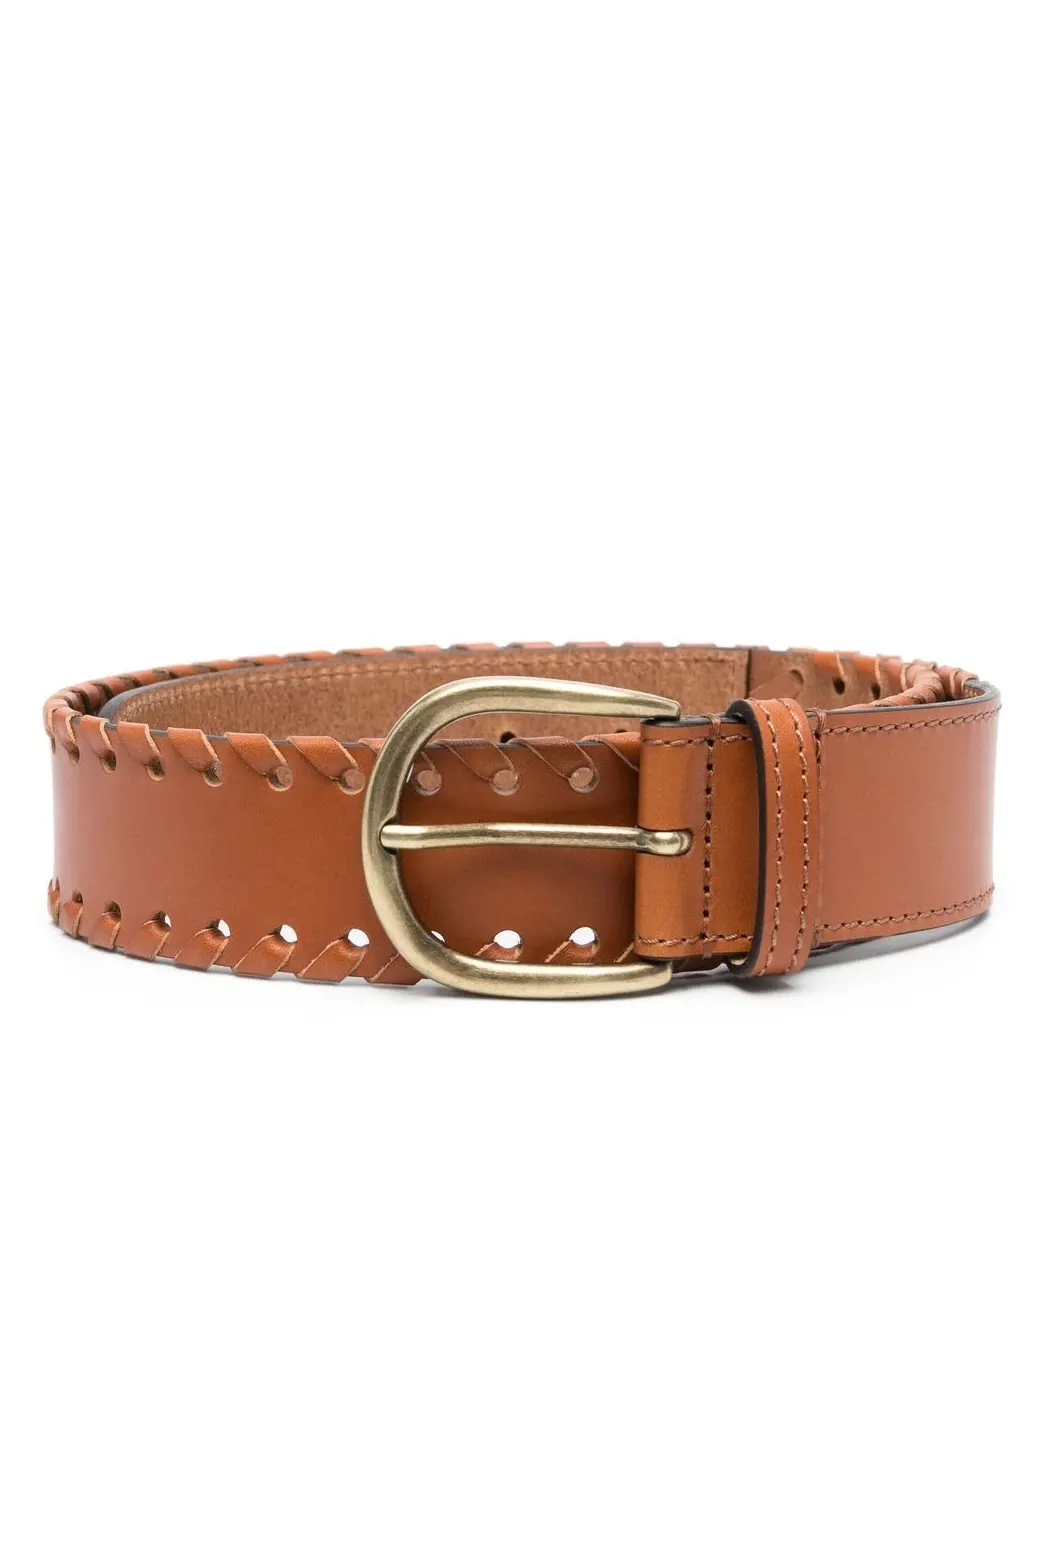 Woven-edge buckle belt, brown